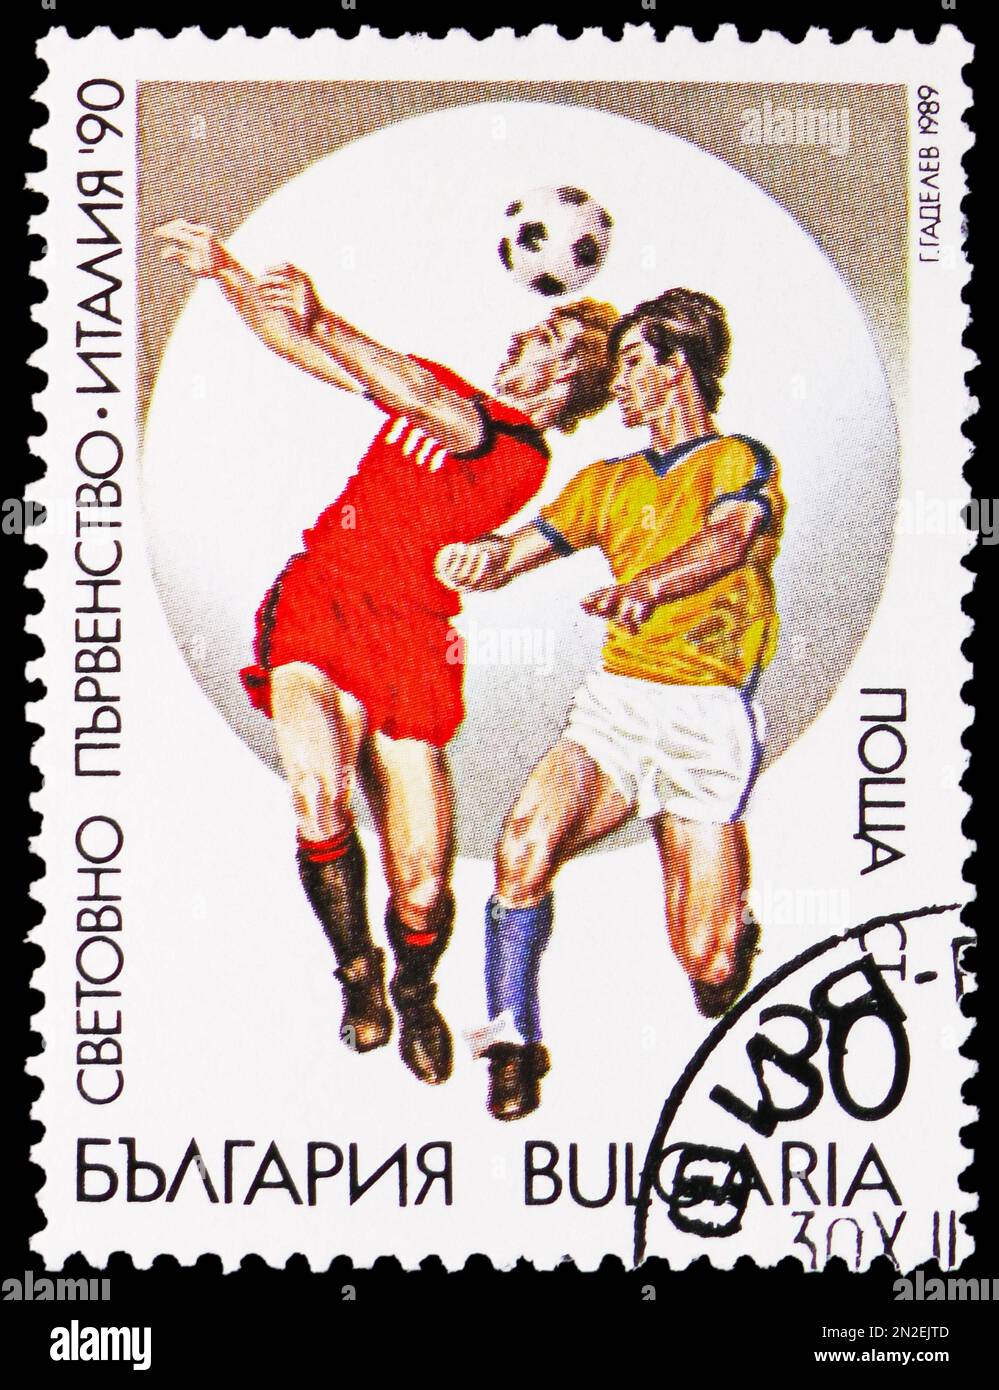 MOSKAU, RUSSLAND - 4. FEBRUAR 2023: In Bulgarien gedruckte Briefmarken zeigen Fußballweltmeisterschaften, FIFA-Weltmeisterschaft 1990 - italienische Serie, ca. 1989 Stockfoto